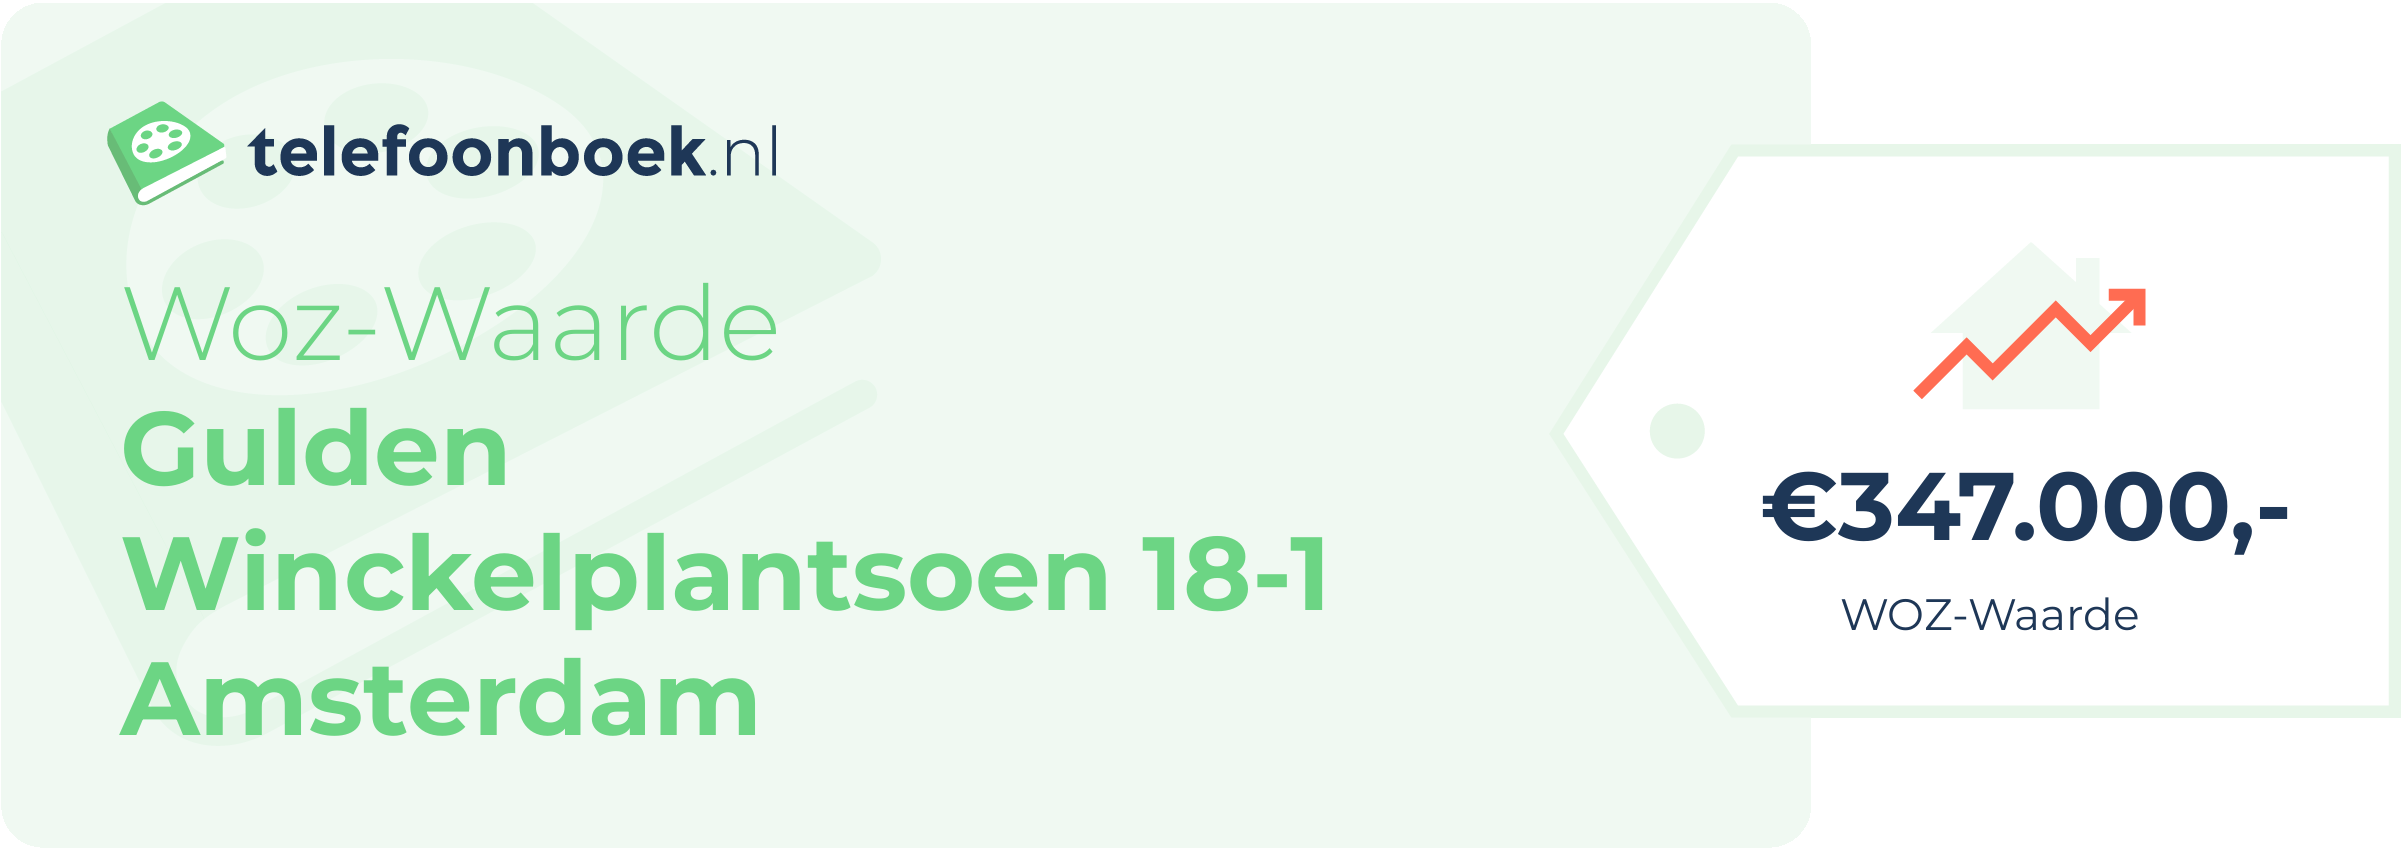 WOZ-waarde Gulden Winckelplantsoen 18-1 Amsterdam